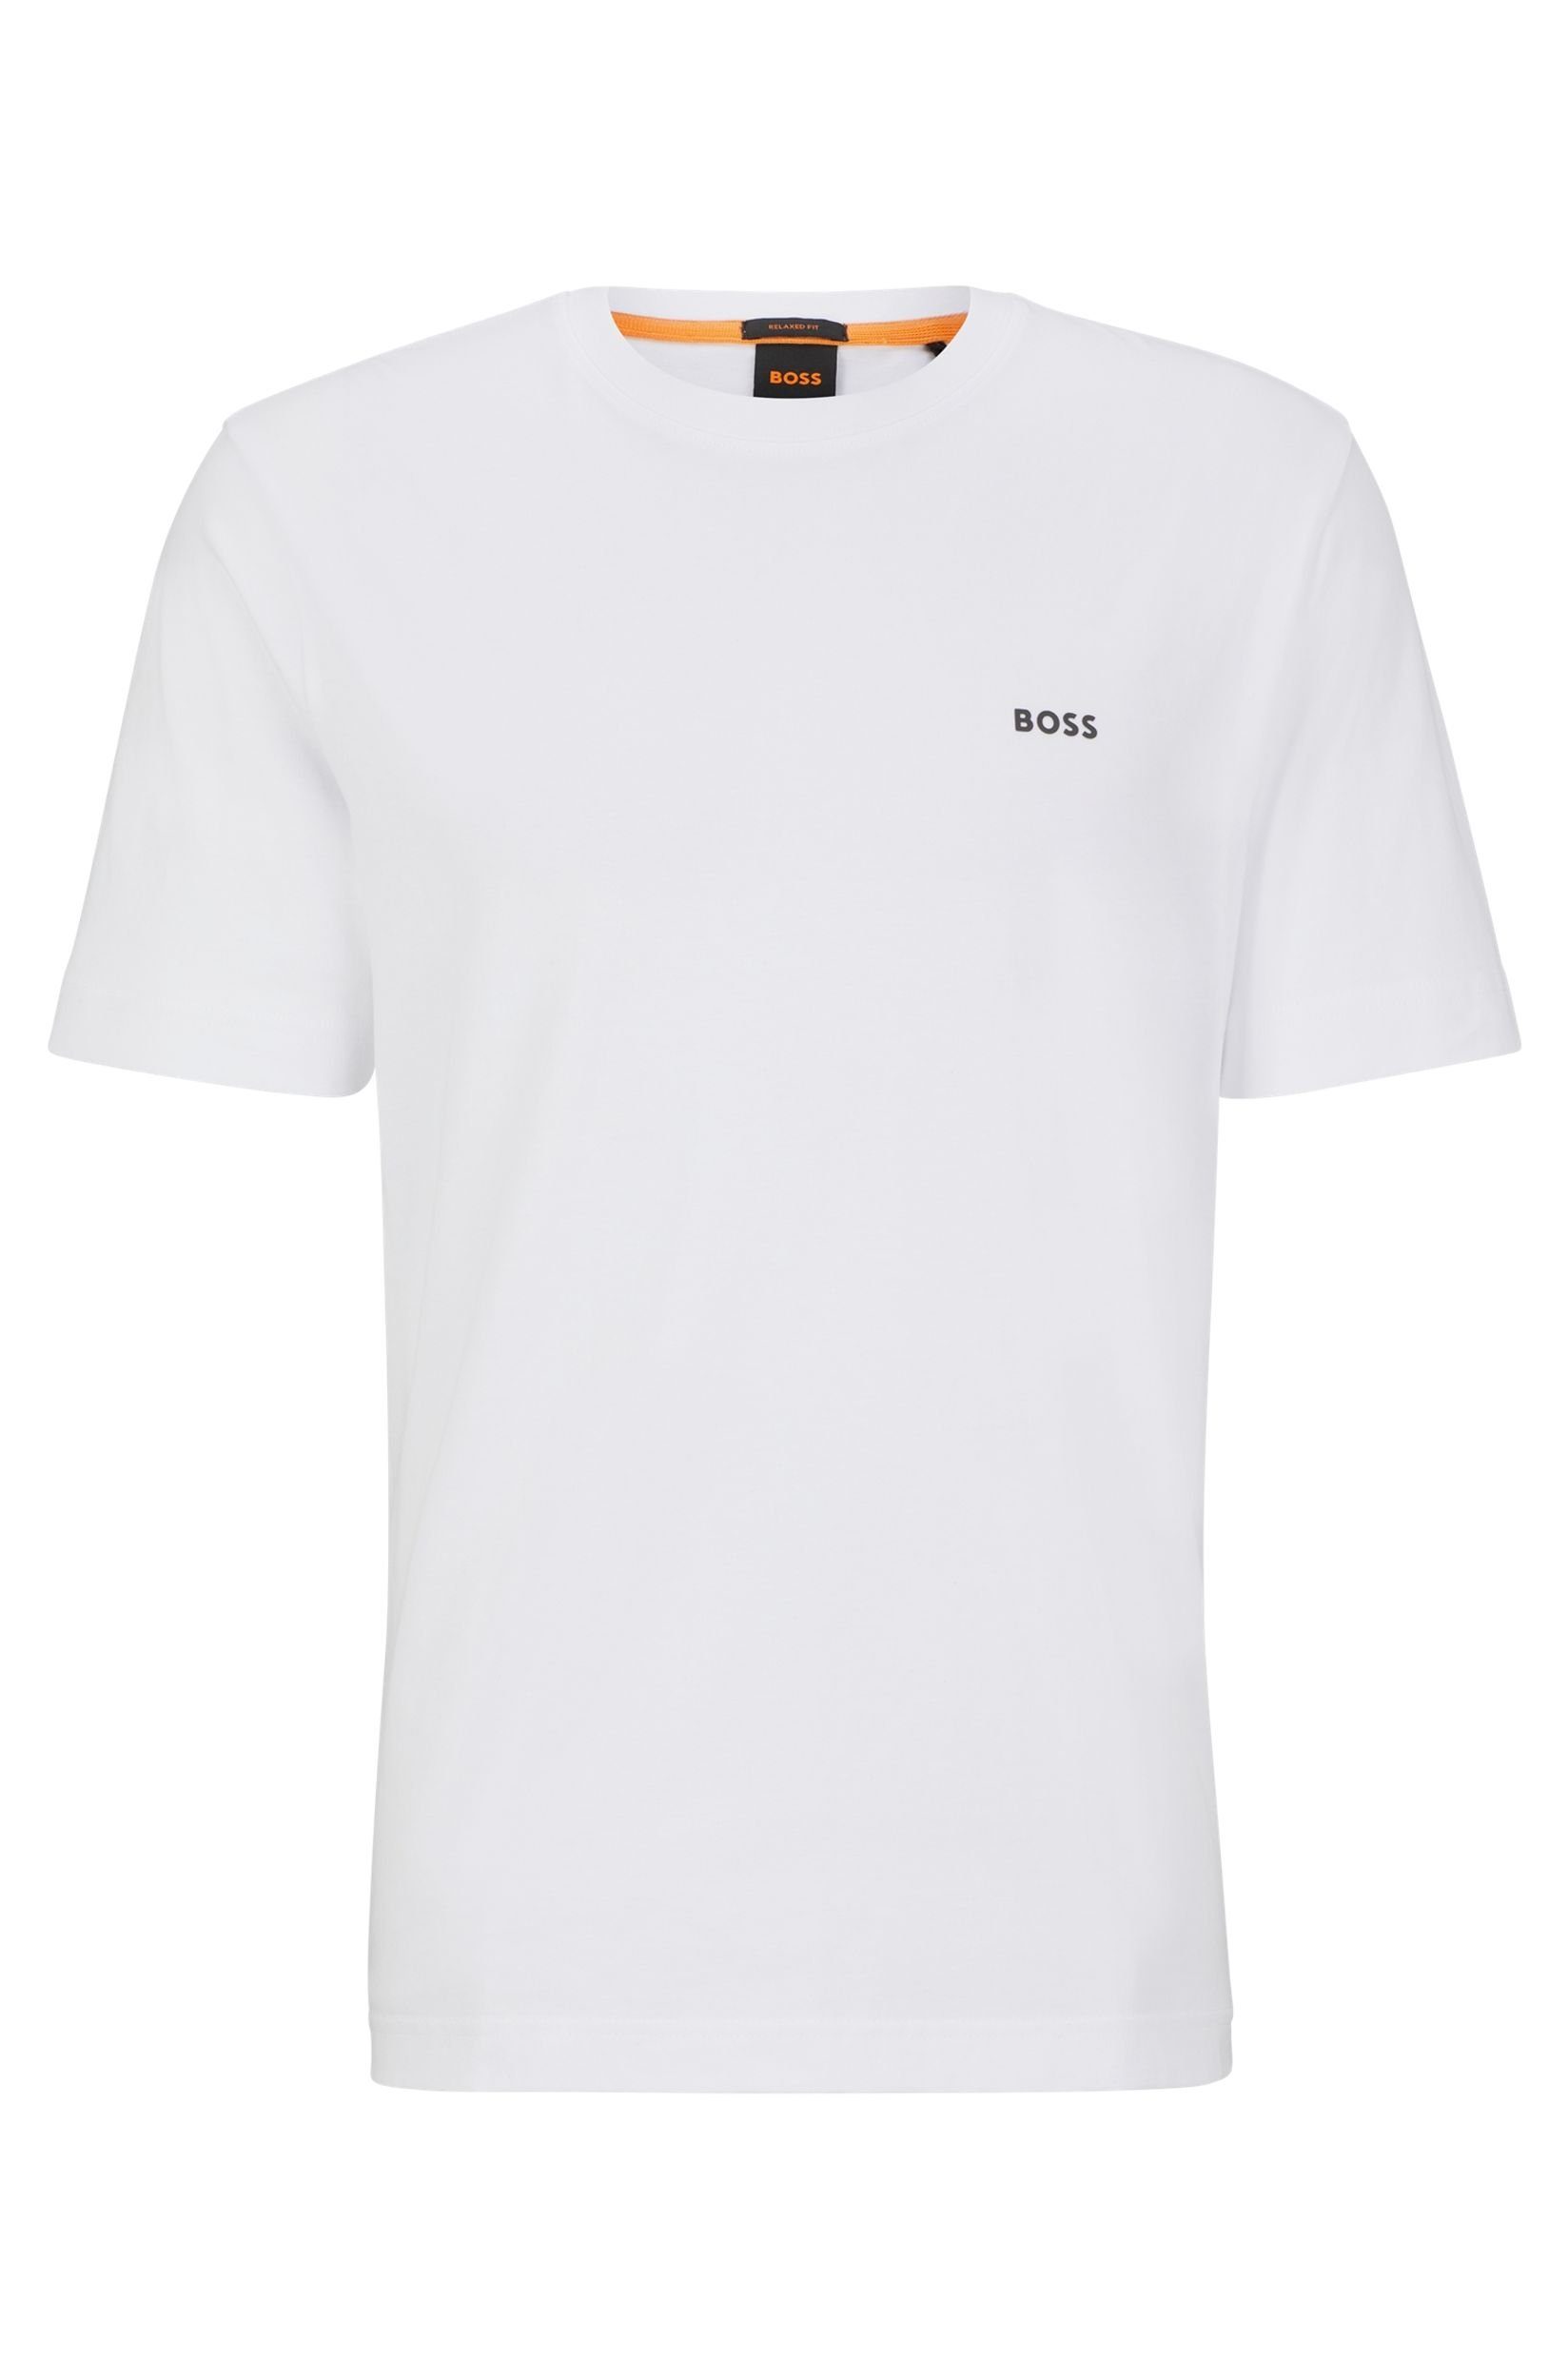 T-Shirt ORANGE Boss BOSS "TeeBossRacing" Orange white T-Shirt